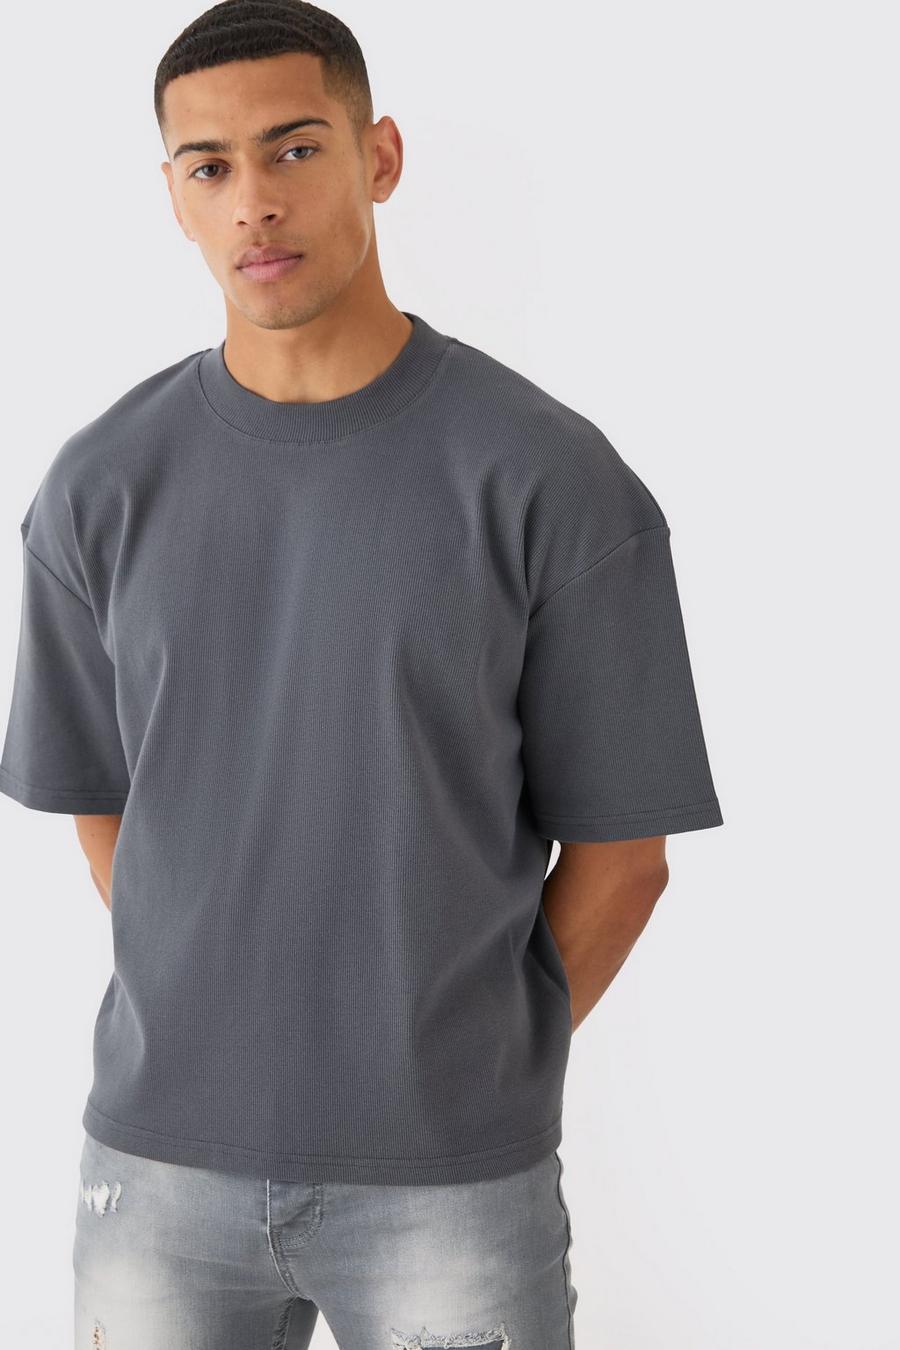 Camiseta oversize recta de canalé grueso con cuello extendido, Charcoal